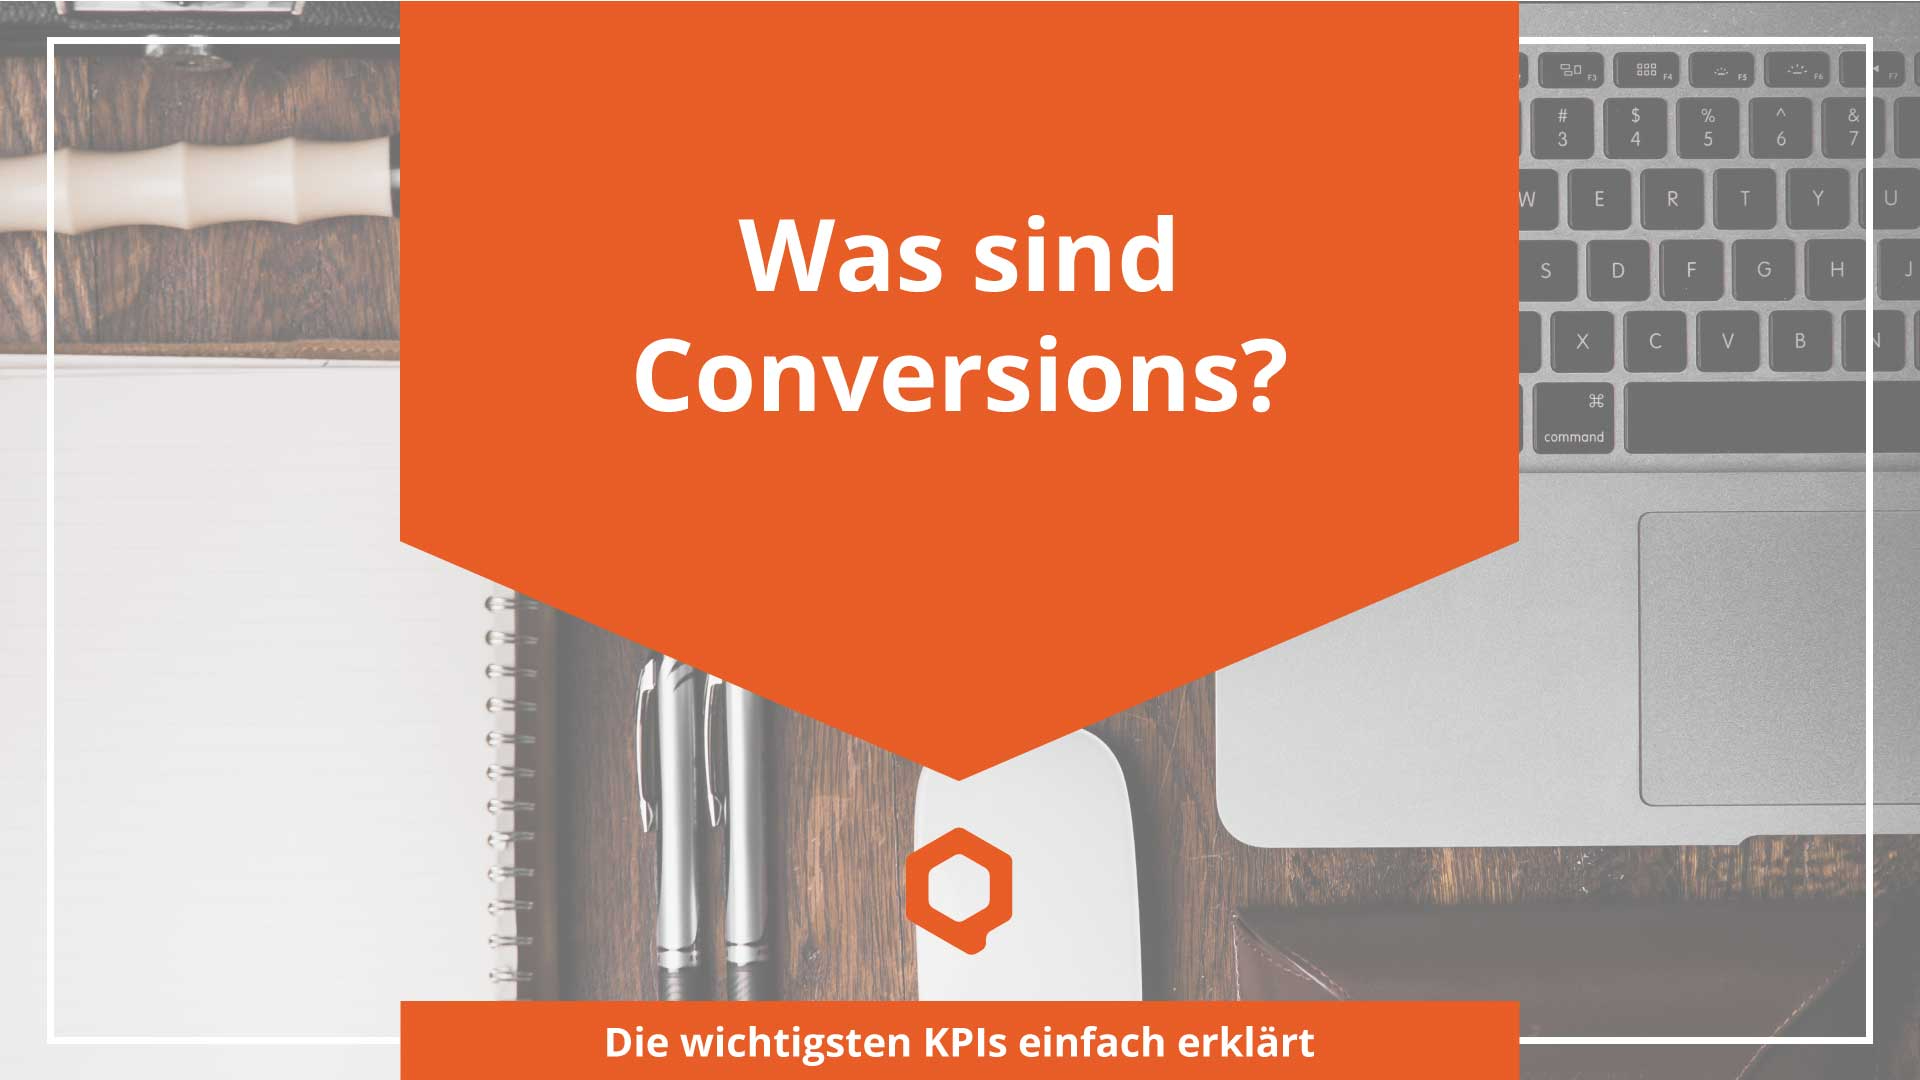 Was ist eine Conversion? - Online Marketing Begriffe erklärt